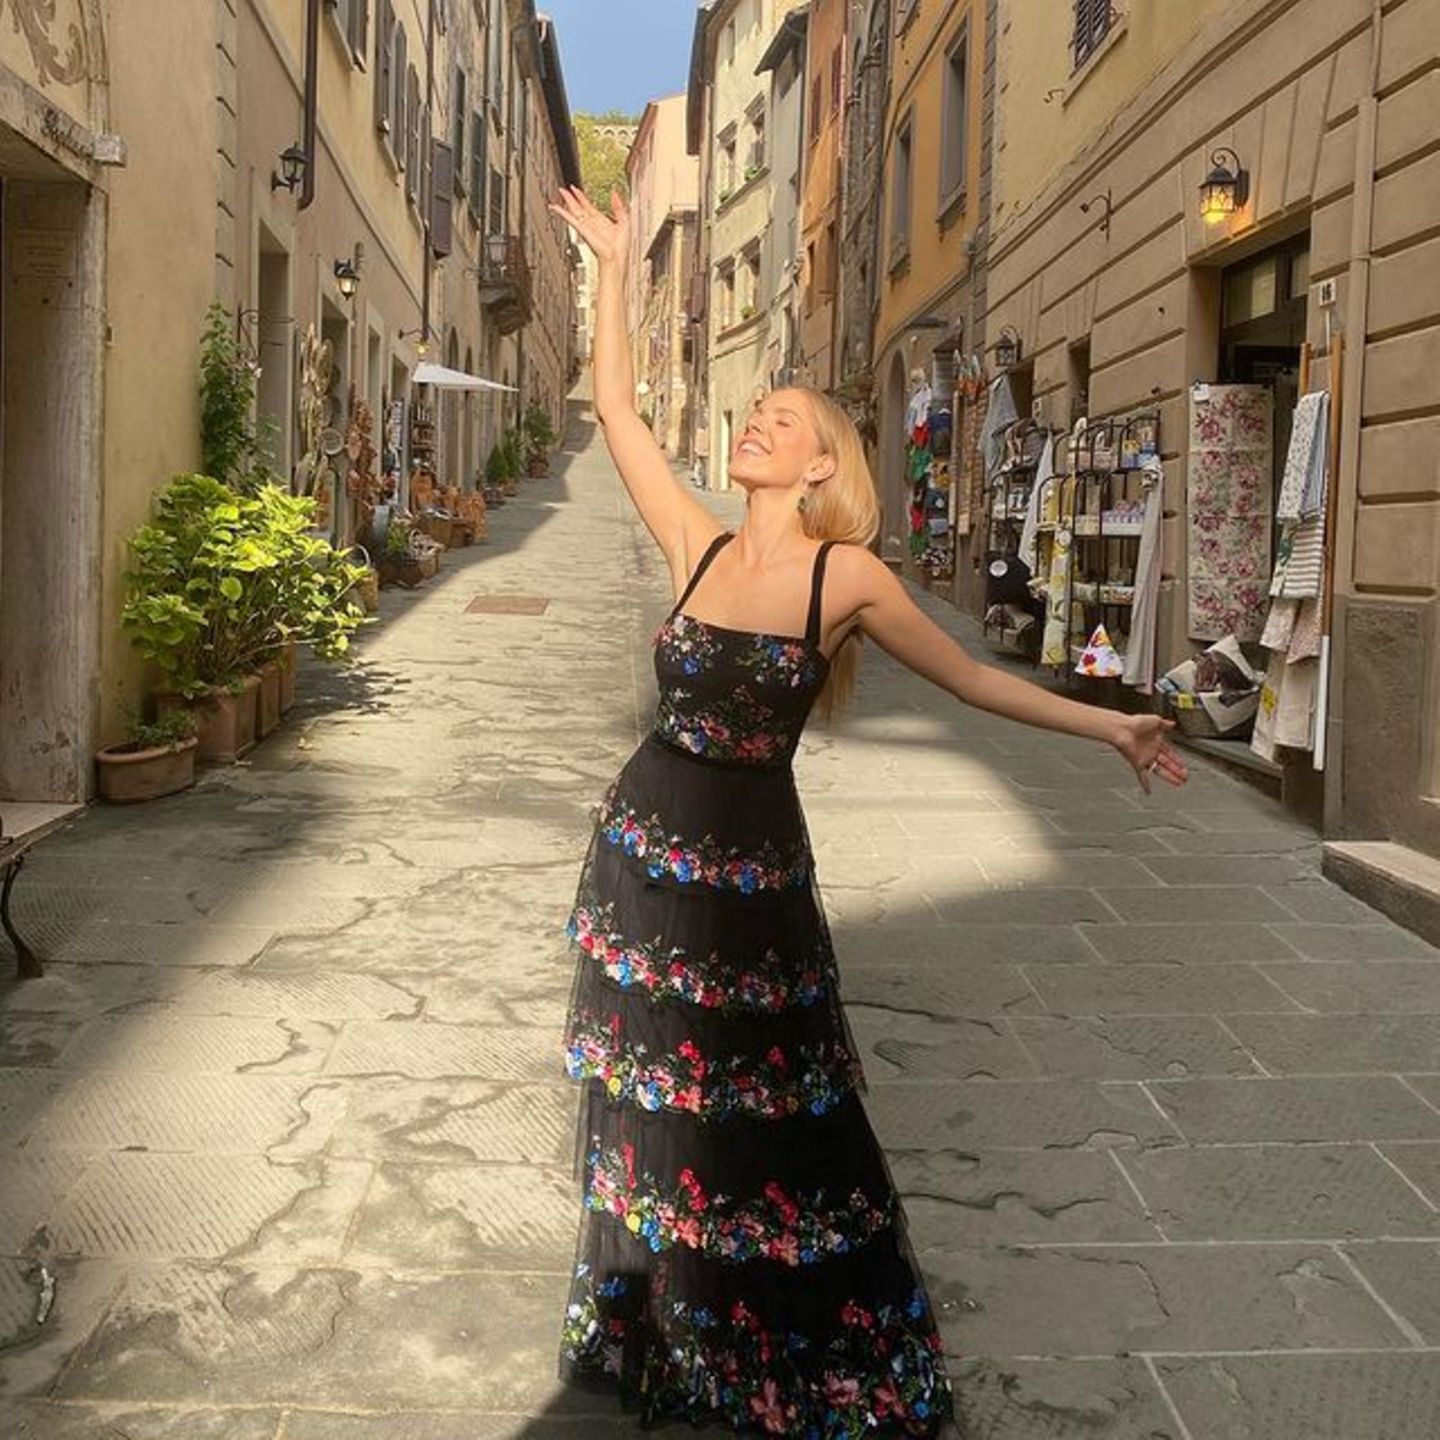 Für eine Hochzeit in Italien wirft sich Moderatorin Victoria Swarovski in dieses super elegante Outfit. Das bodenlange Kleid mit Blumendetails und verschiedenen Lagen aus Tüll passt perfekt nach Italien.